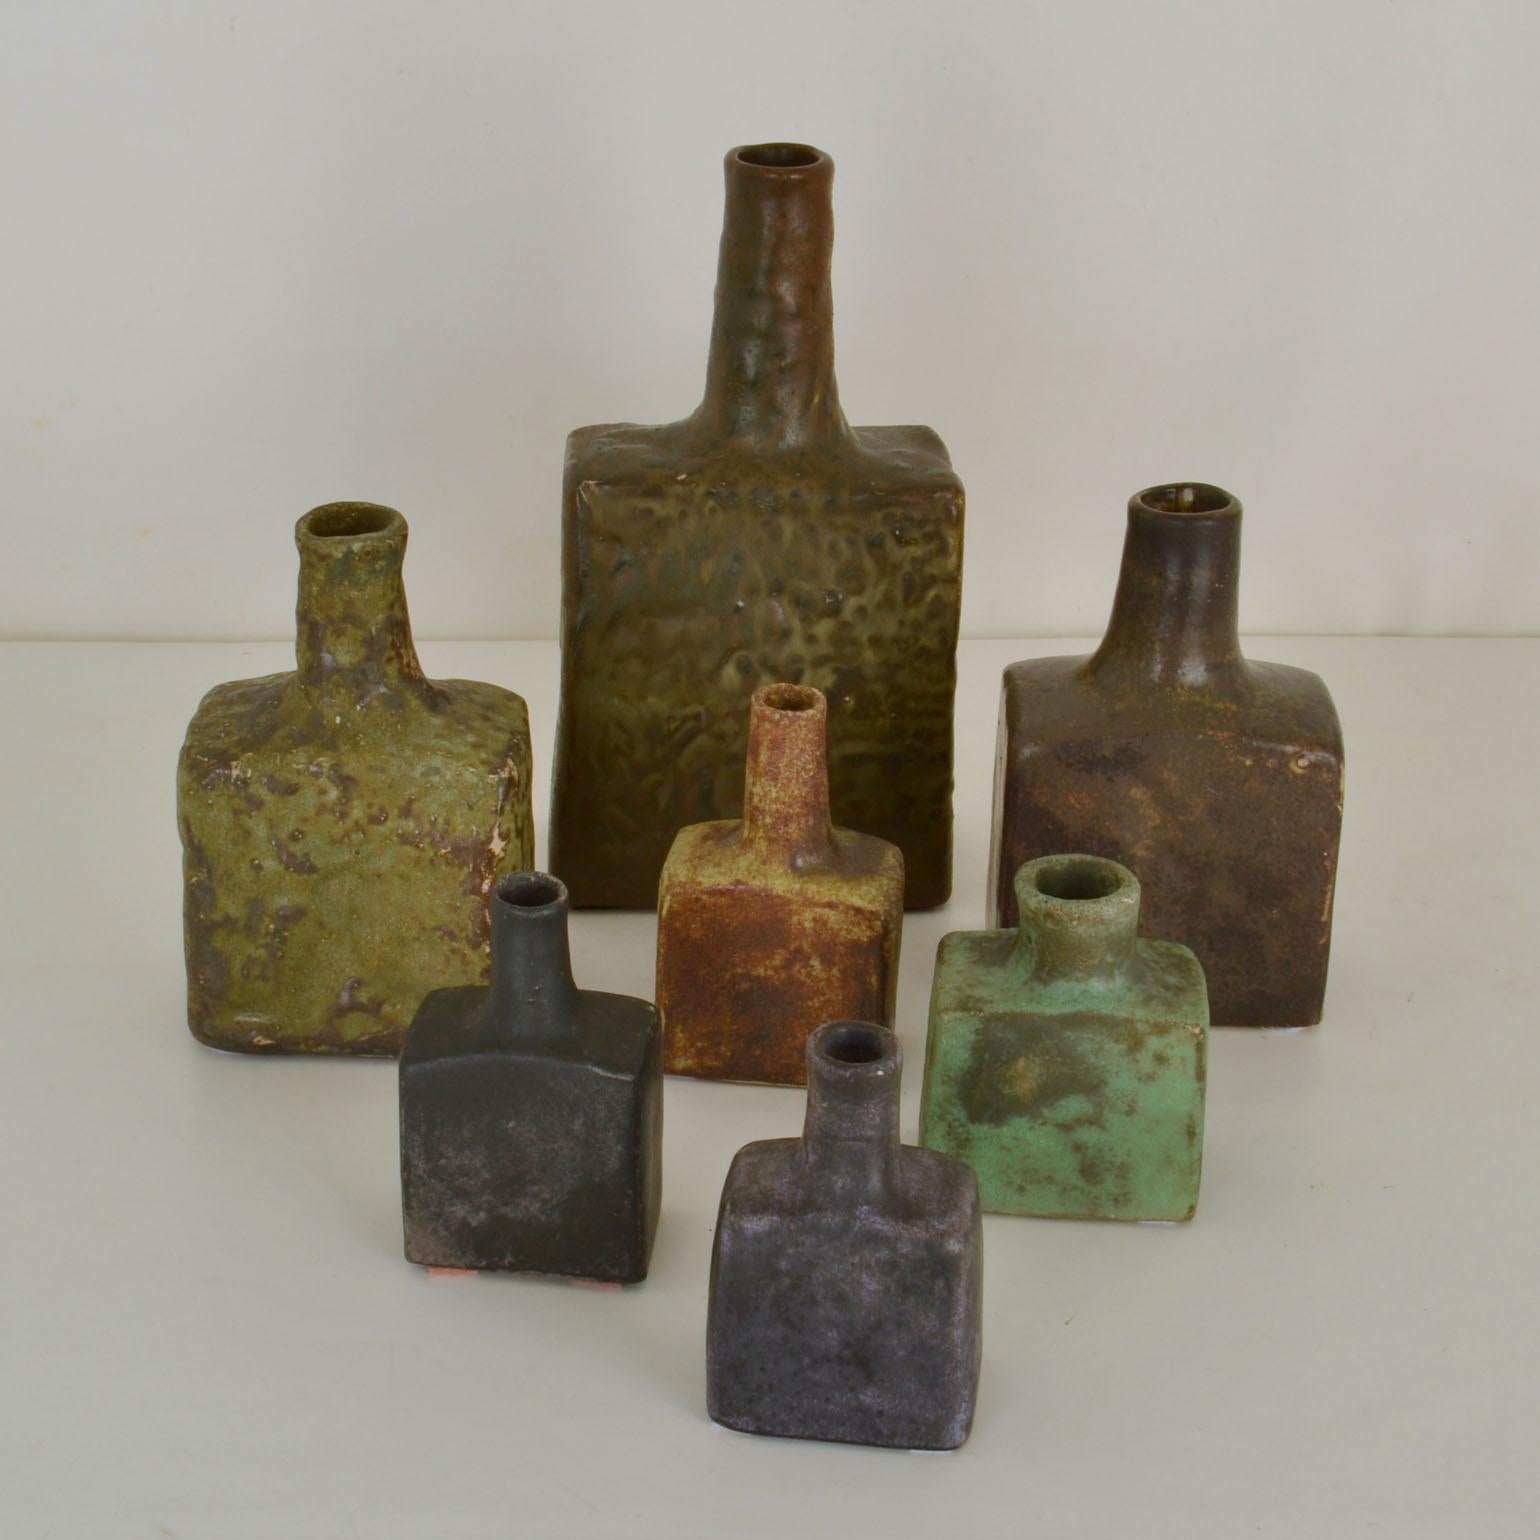 Dutch Square Studio Ceramic Vases in Natural Tones and Organic Glaze